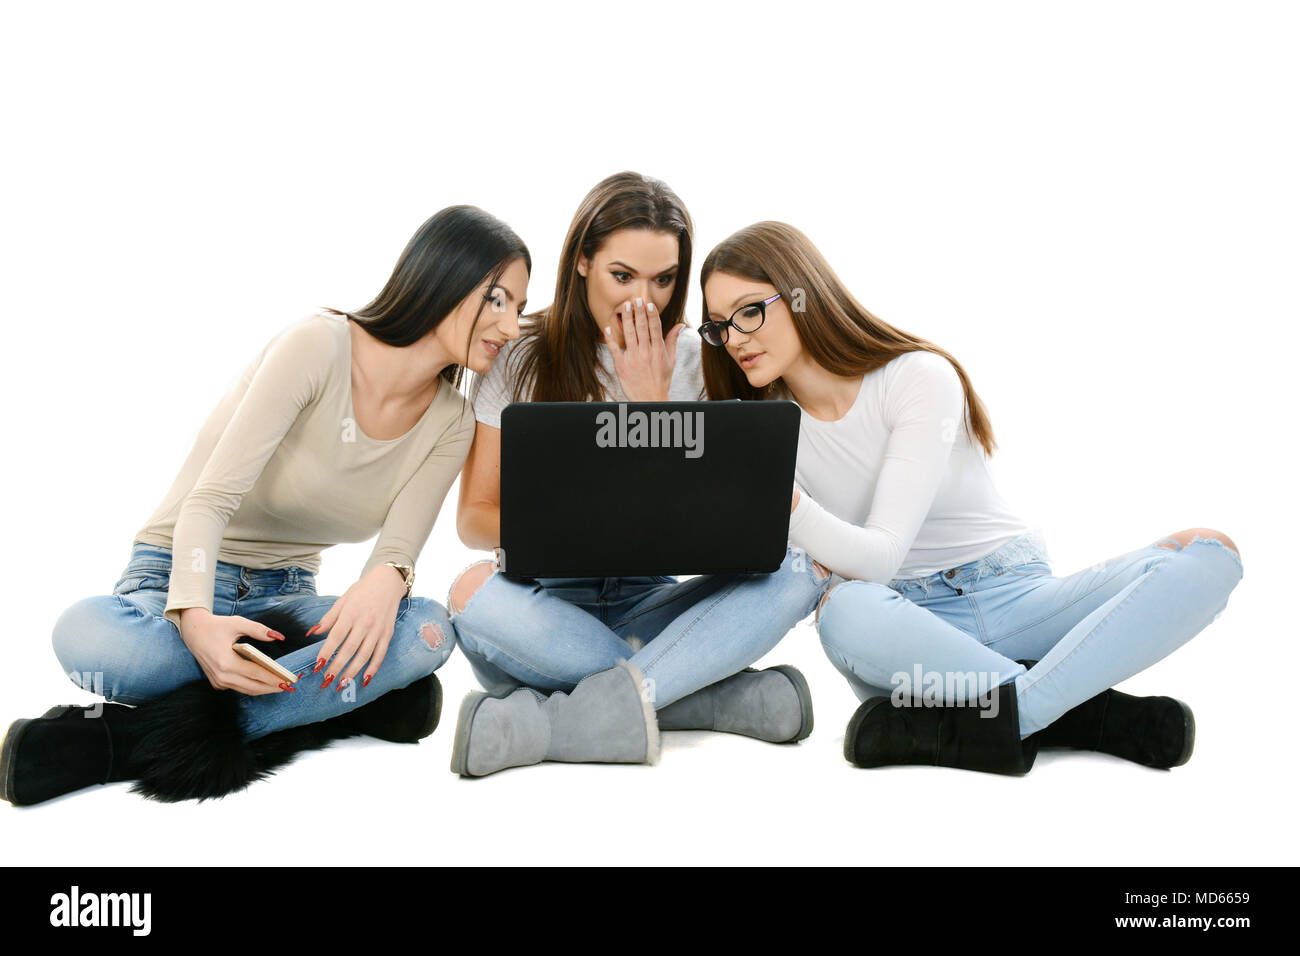 Trois jeunes filles assises sur le sol, jambes croisées, holding laptop Banque D'Images